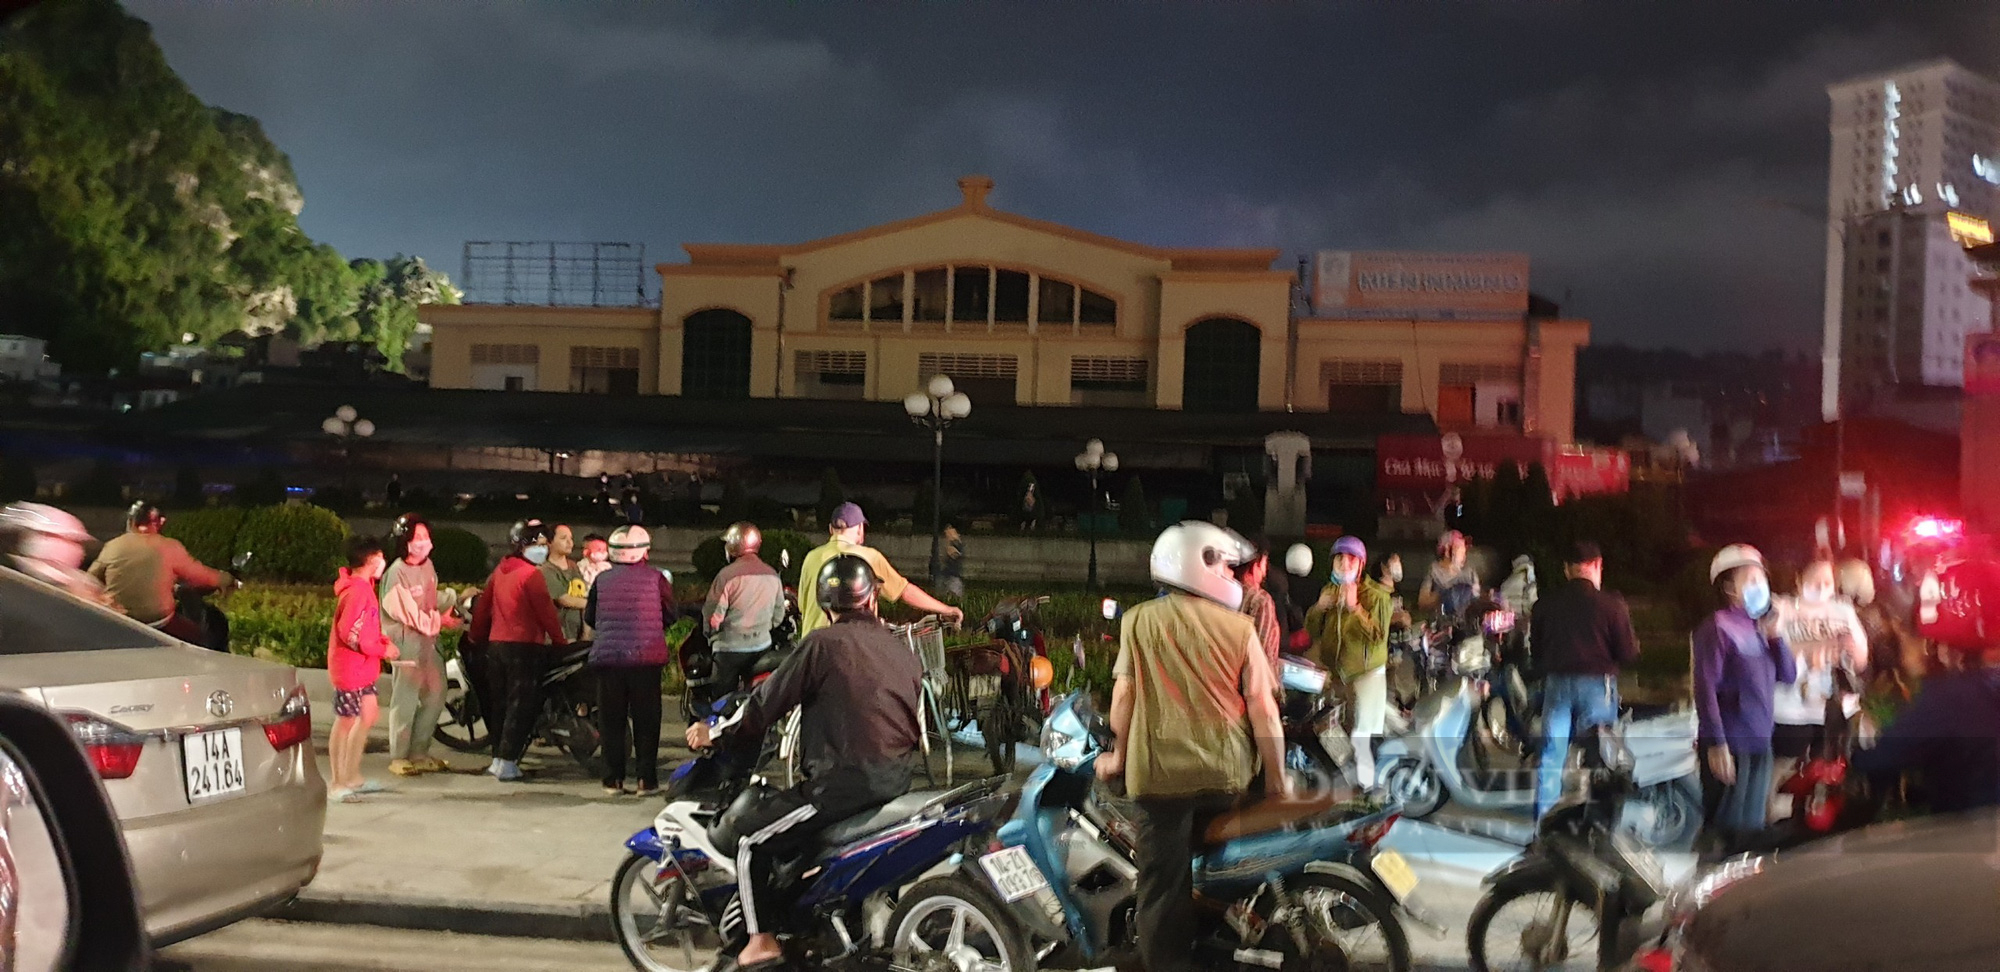 Quảng Ninh: Chợ hải sản Hạ Long cháy sau kỳ nghỉ lễ - Ảnh 1.